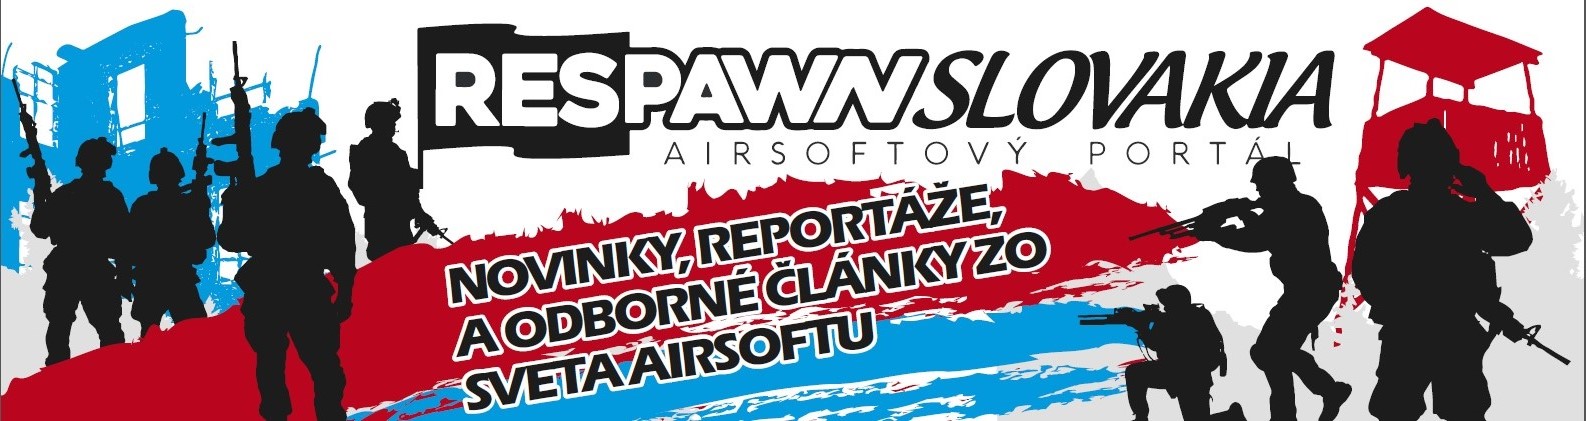 RespawnSlovakia